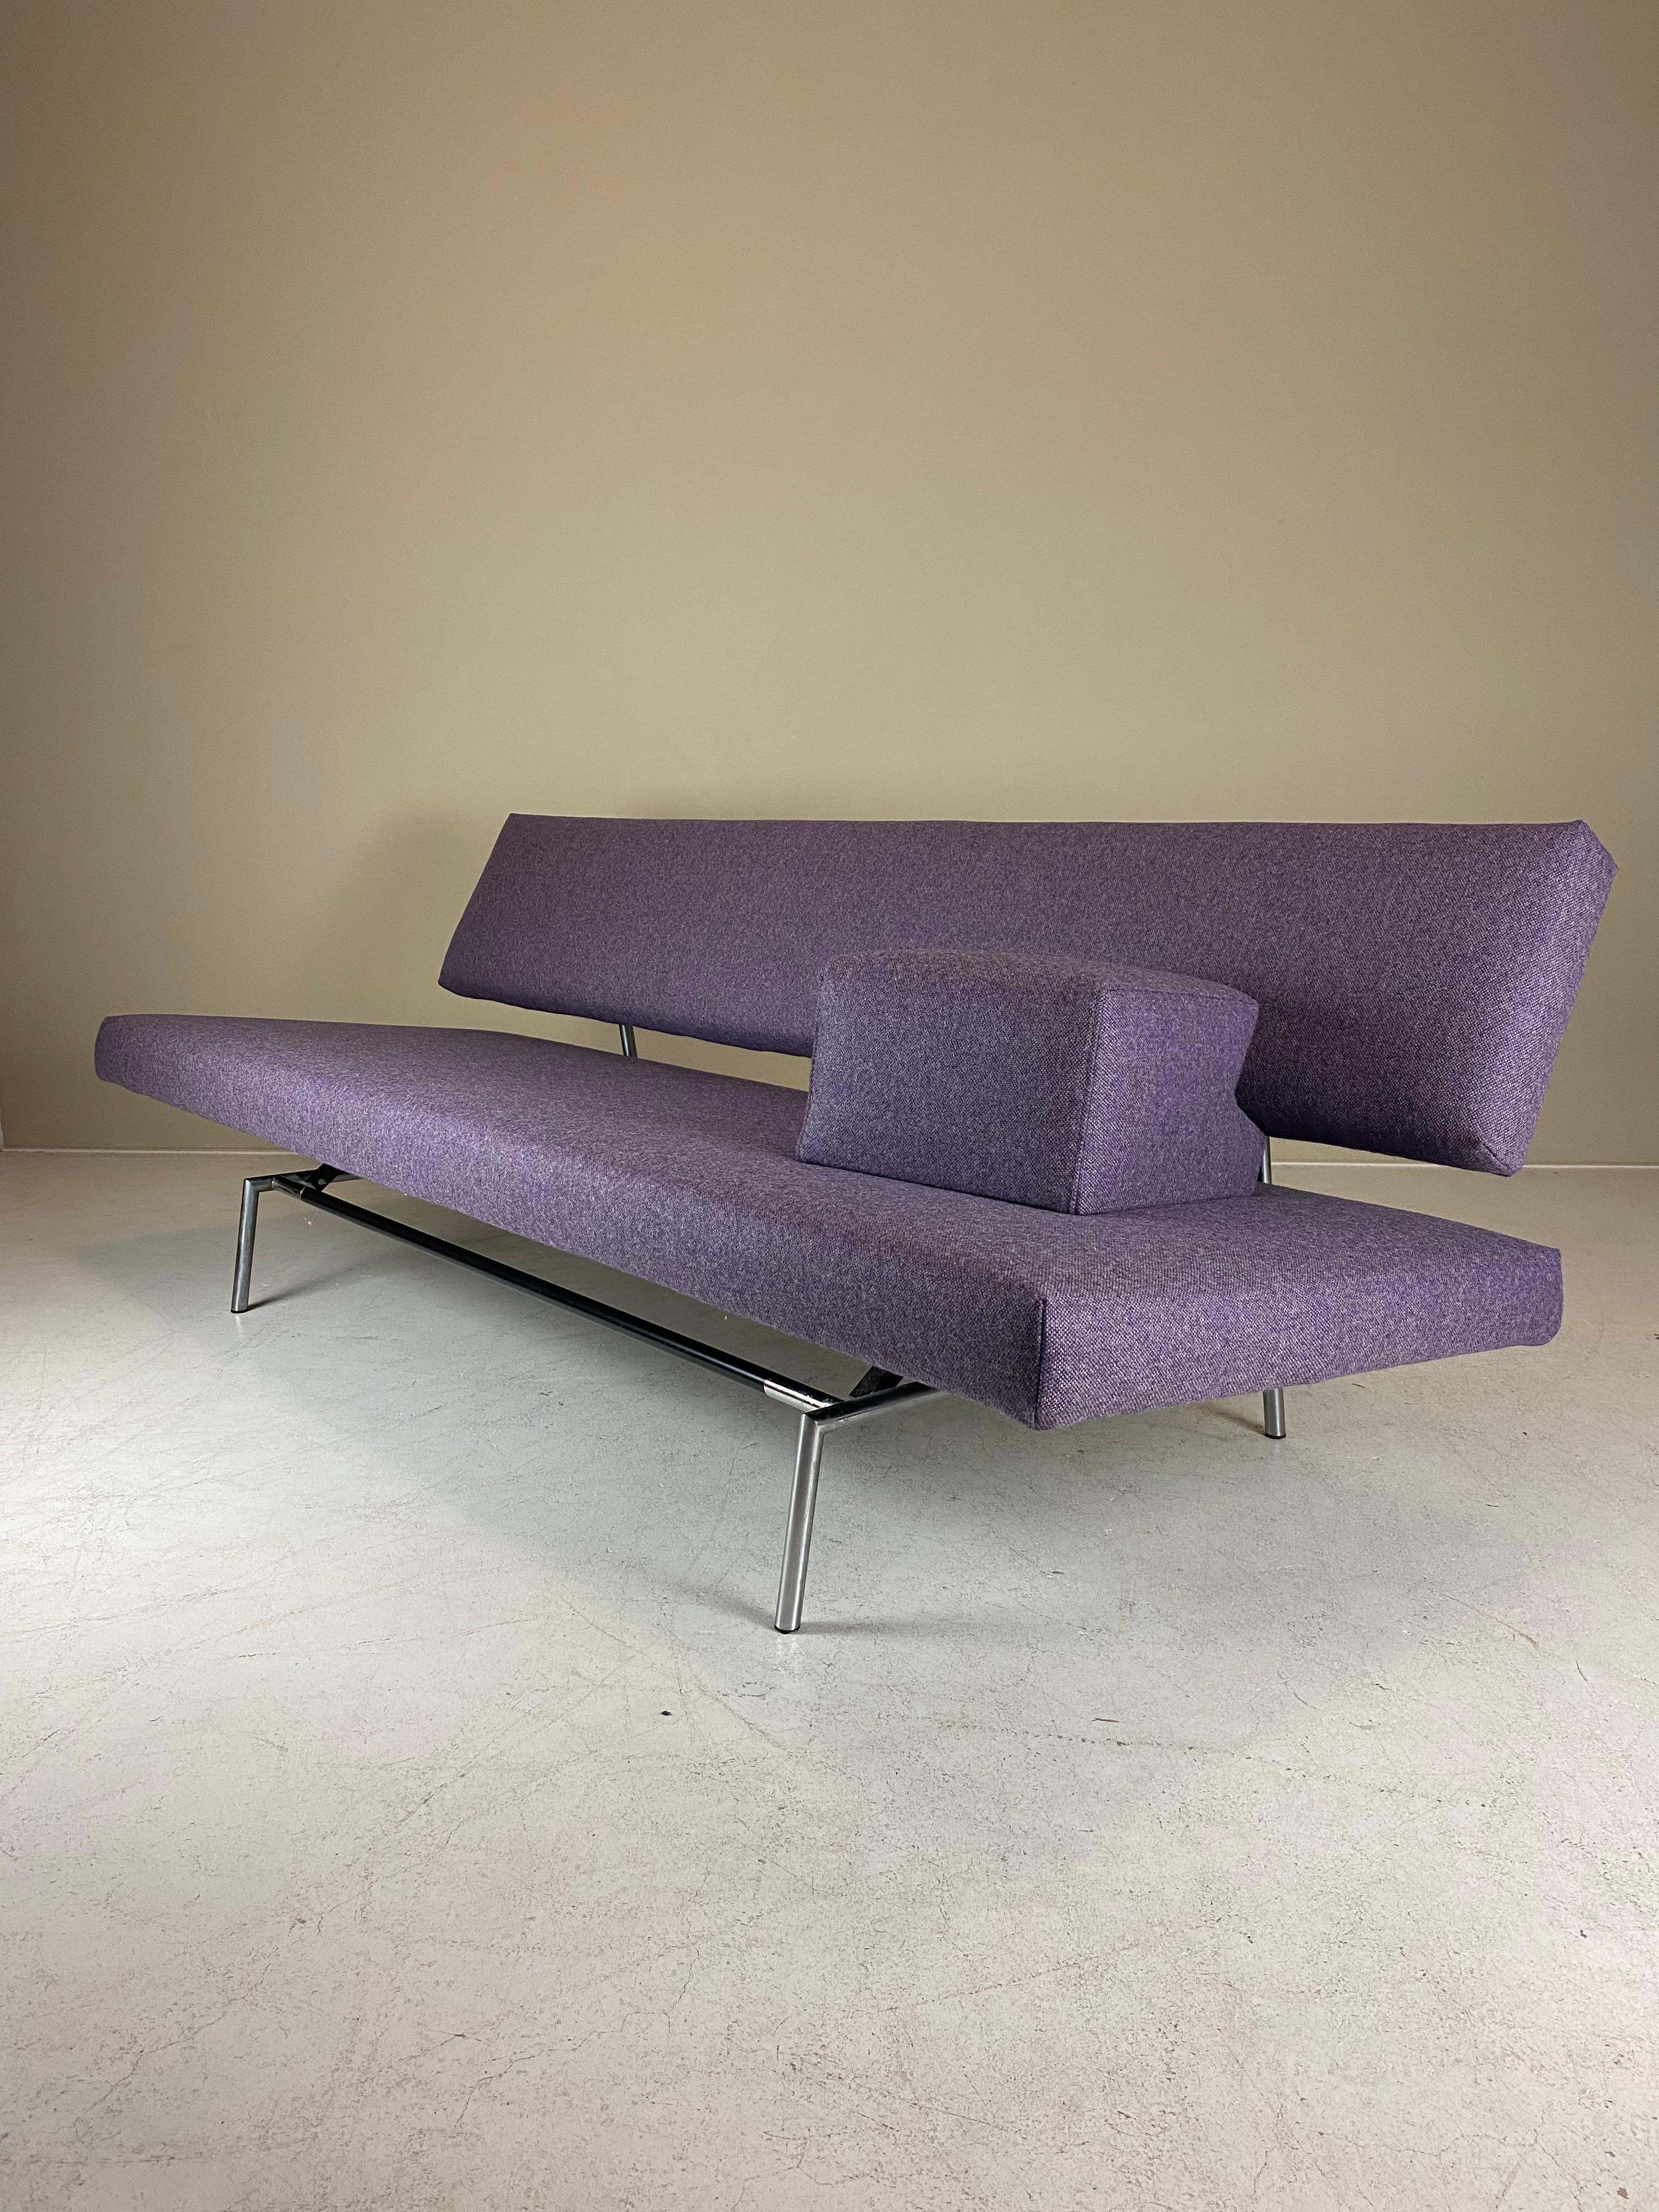 Gelistet ist eine ikonische BR02 Sofa / Schlafsofa / Daybed von Martin Visser für 't Spectrum. Dieses 1960 entworfene, minimalistische Sofa lässt sich mit einer einfachen Bewegung in ein Bett verwandeln. Das Modell Nr. BR02 bezieht sich auf den